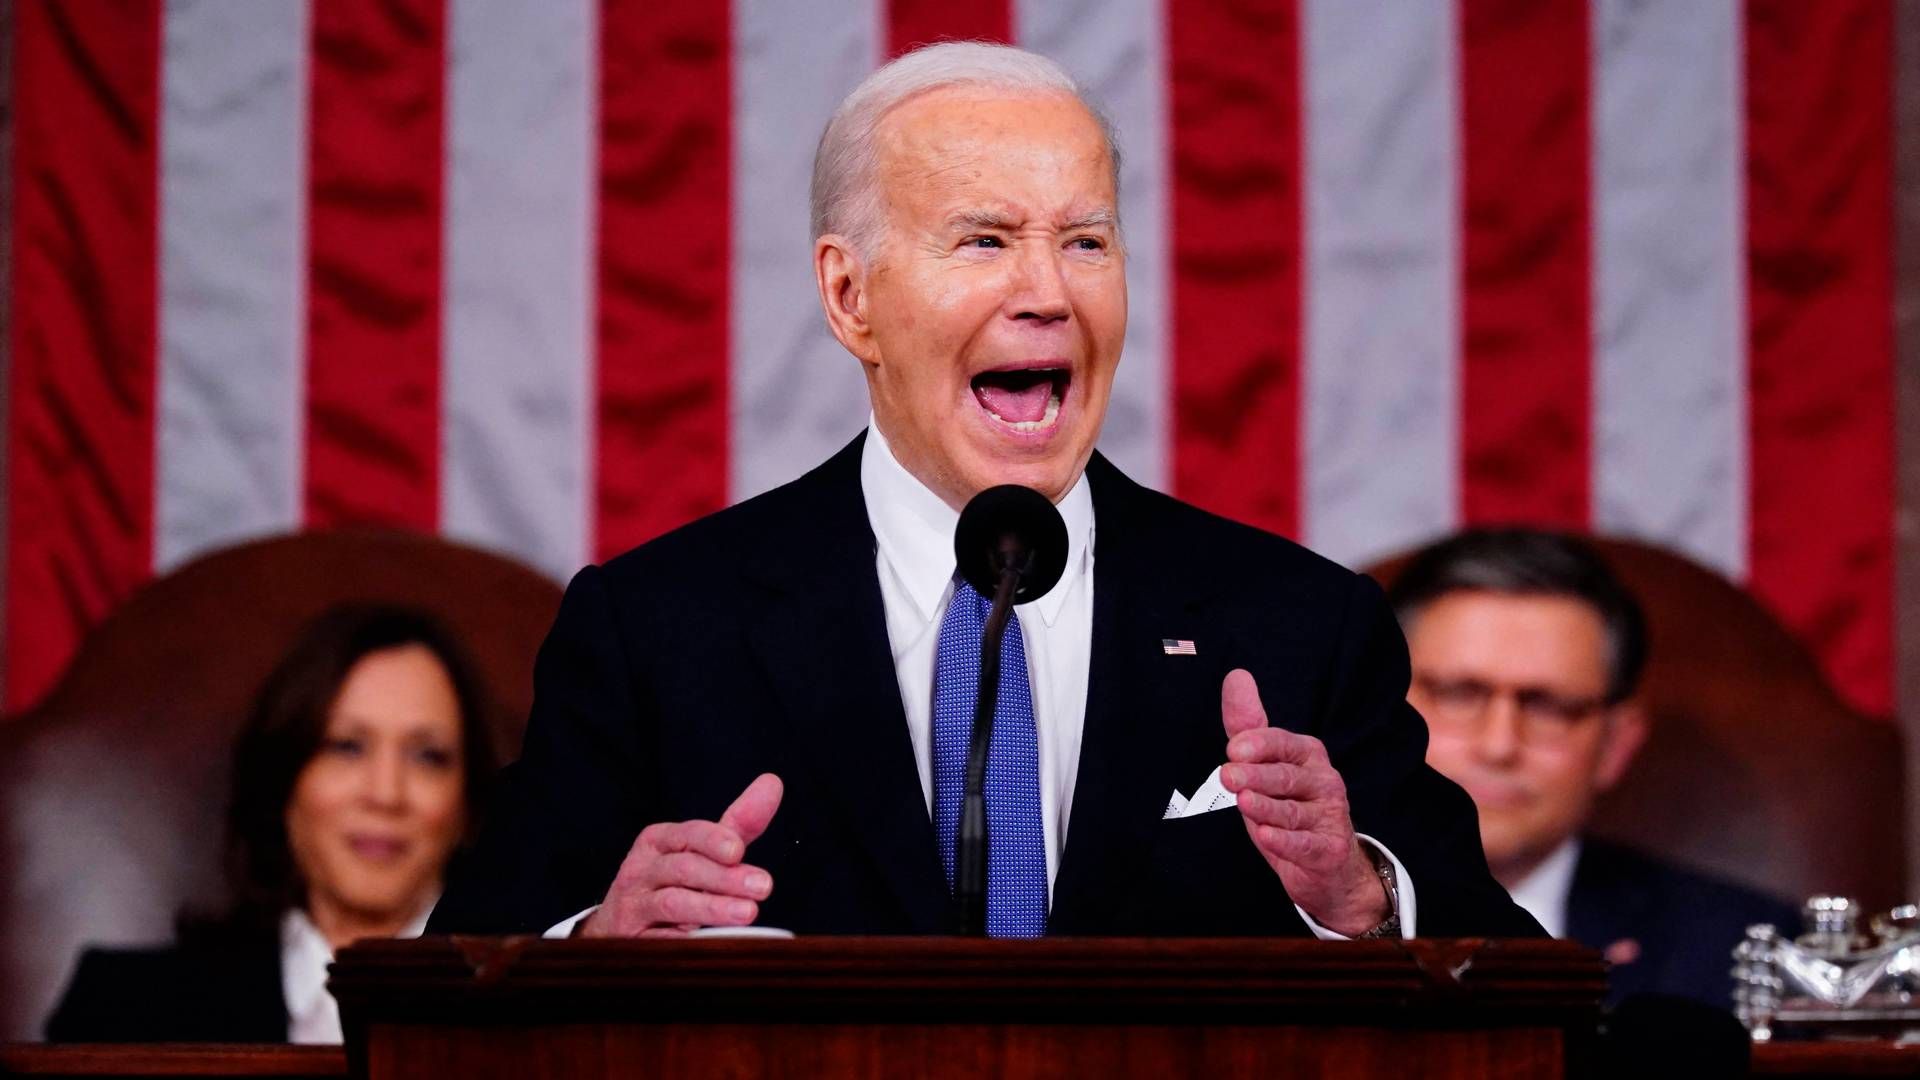 USA's præsident, Joe Biden, viste, at han følte sig hjemme på talerstolen og hjemme i Kongresbygningen. Sådan lyder det fra ph.d. i retorik fra Københavns Universitet, foredragsholder og forfatter Mark Herron. | Foto: Shawn Thew/AFP/Ritzau Scanpix